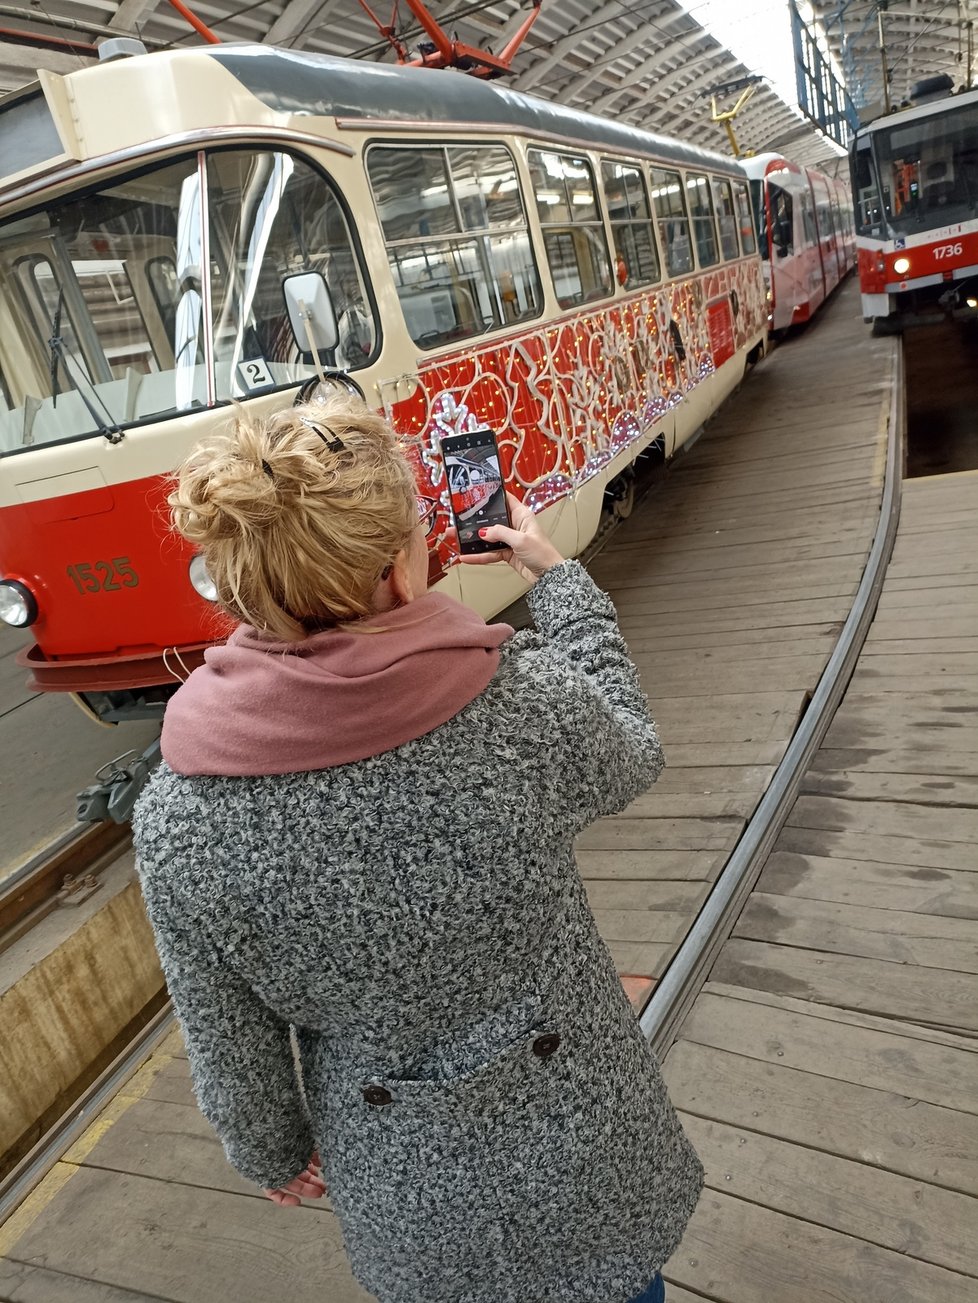 Tři dny zabere vánoční výzdoba retro vánoční tramvaje T3. Cestující bude centrem Brna vozit až do 23.prosince.